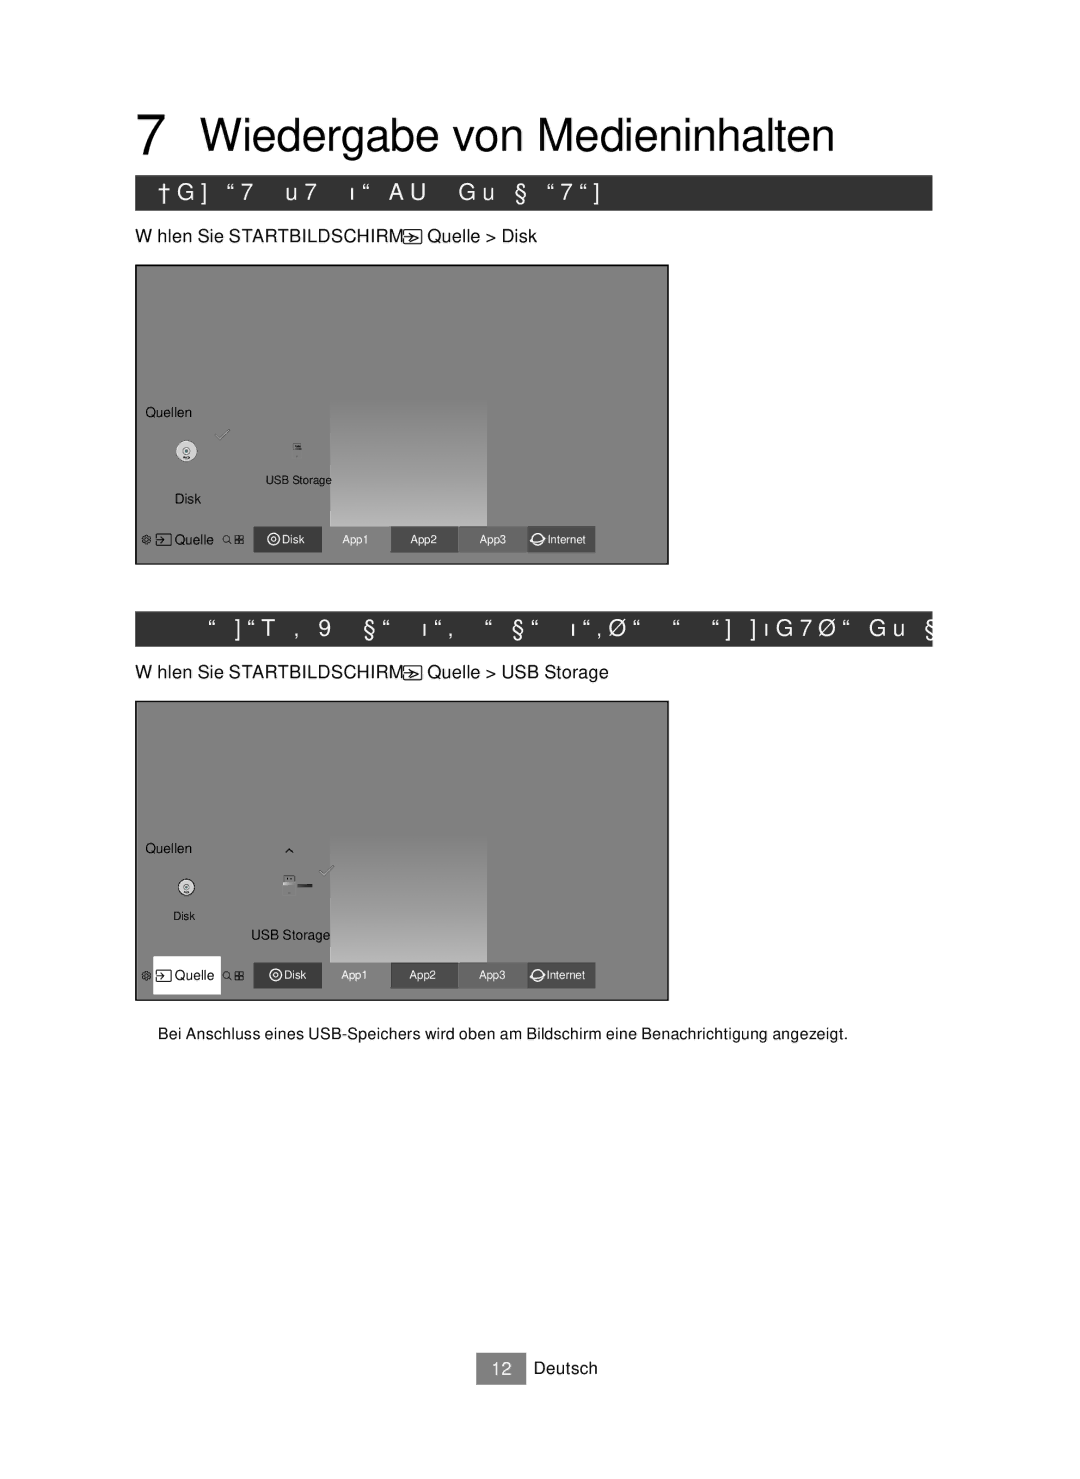 Samsung UBD-M7500/EN Wiedergabe von Medieninhalten, Handelsübliche CDs abspielen, Wählen Sie Startbildschirm Quelle Disk 